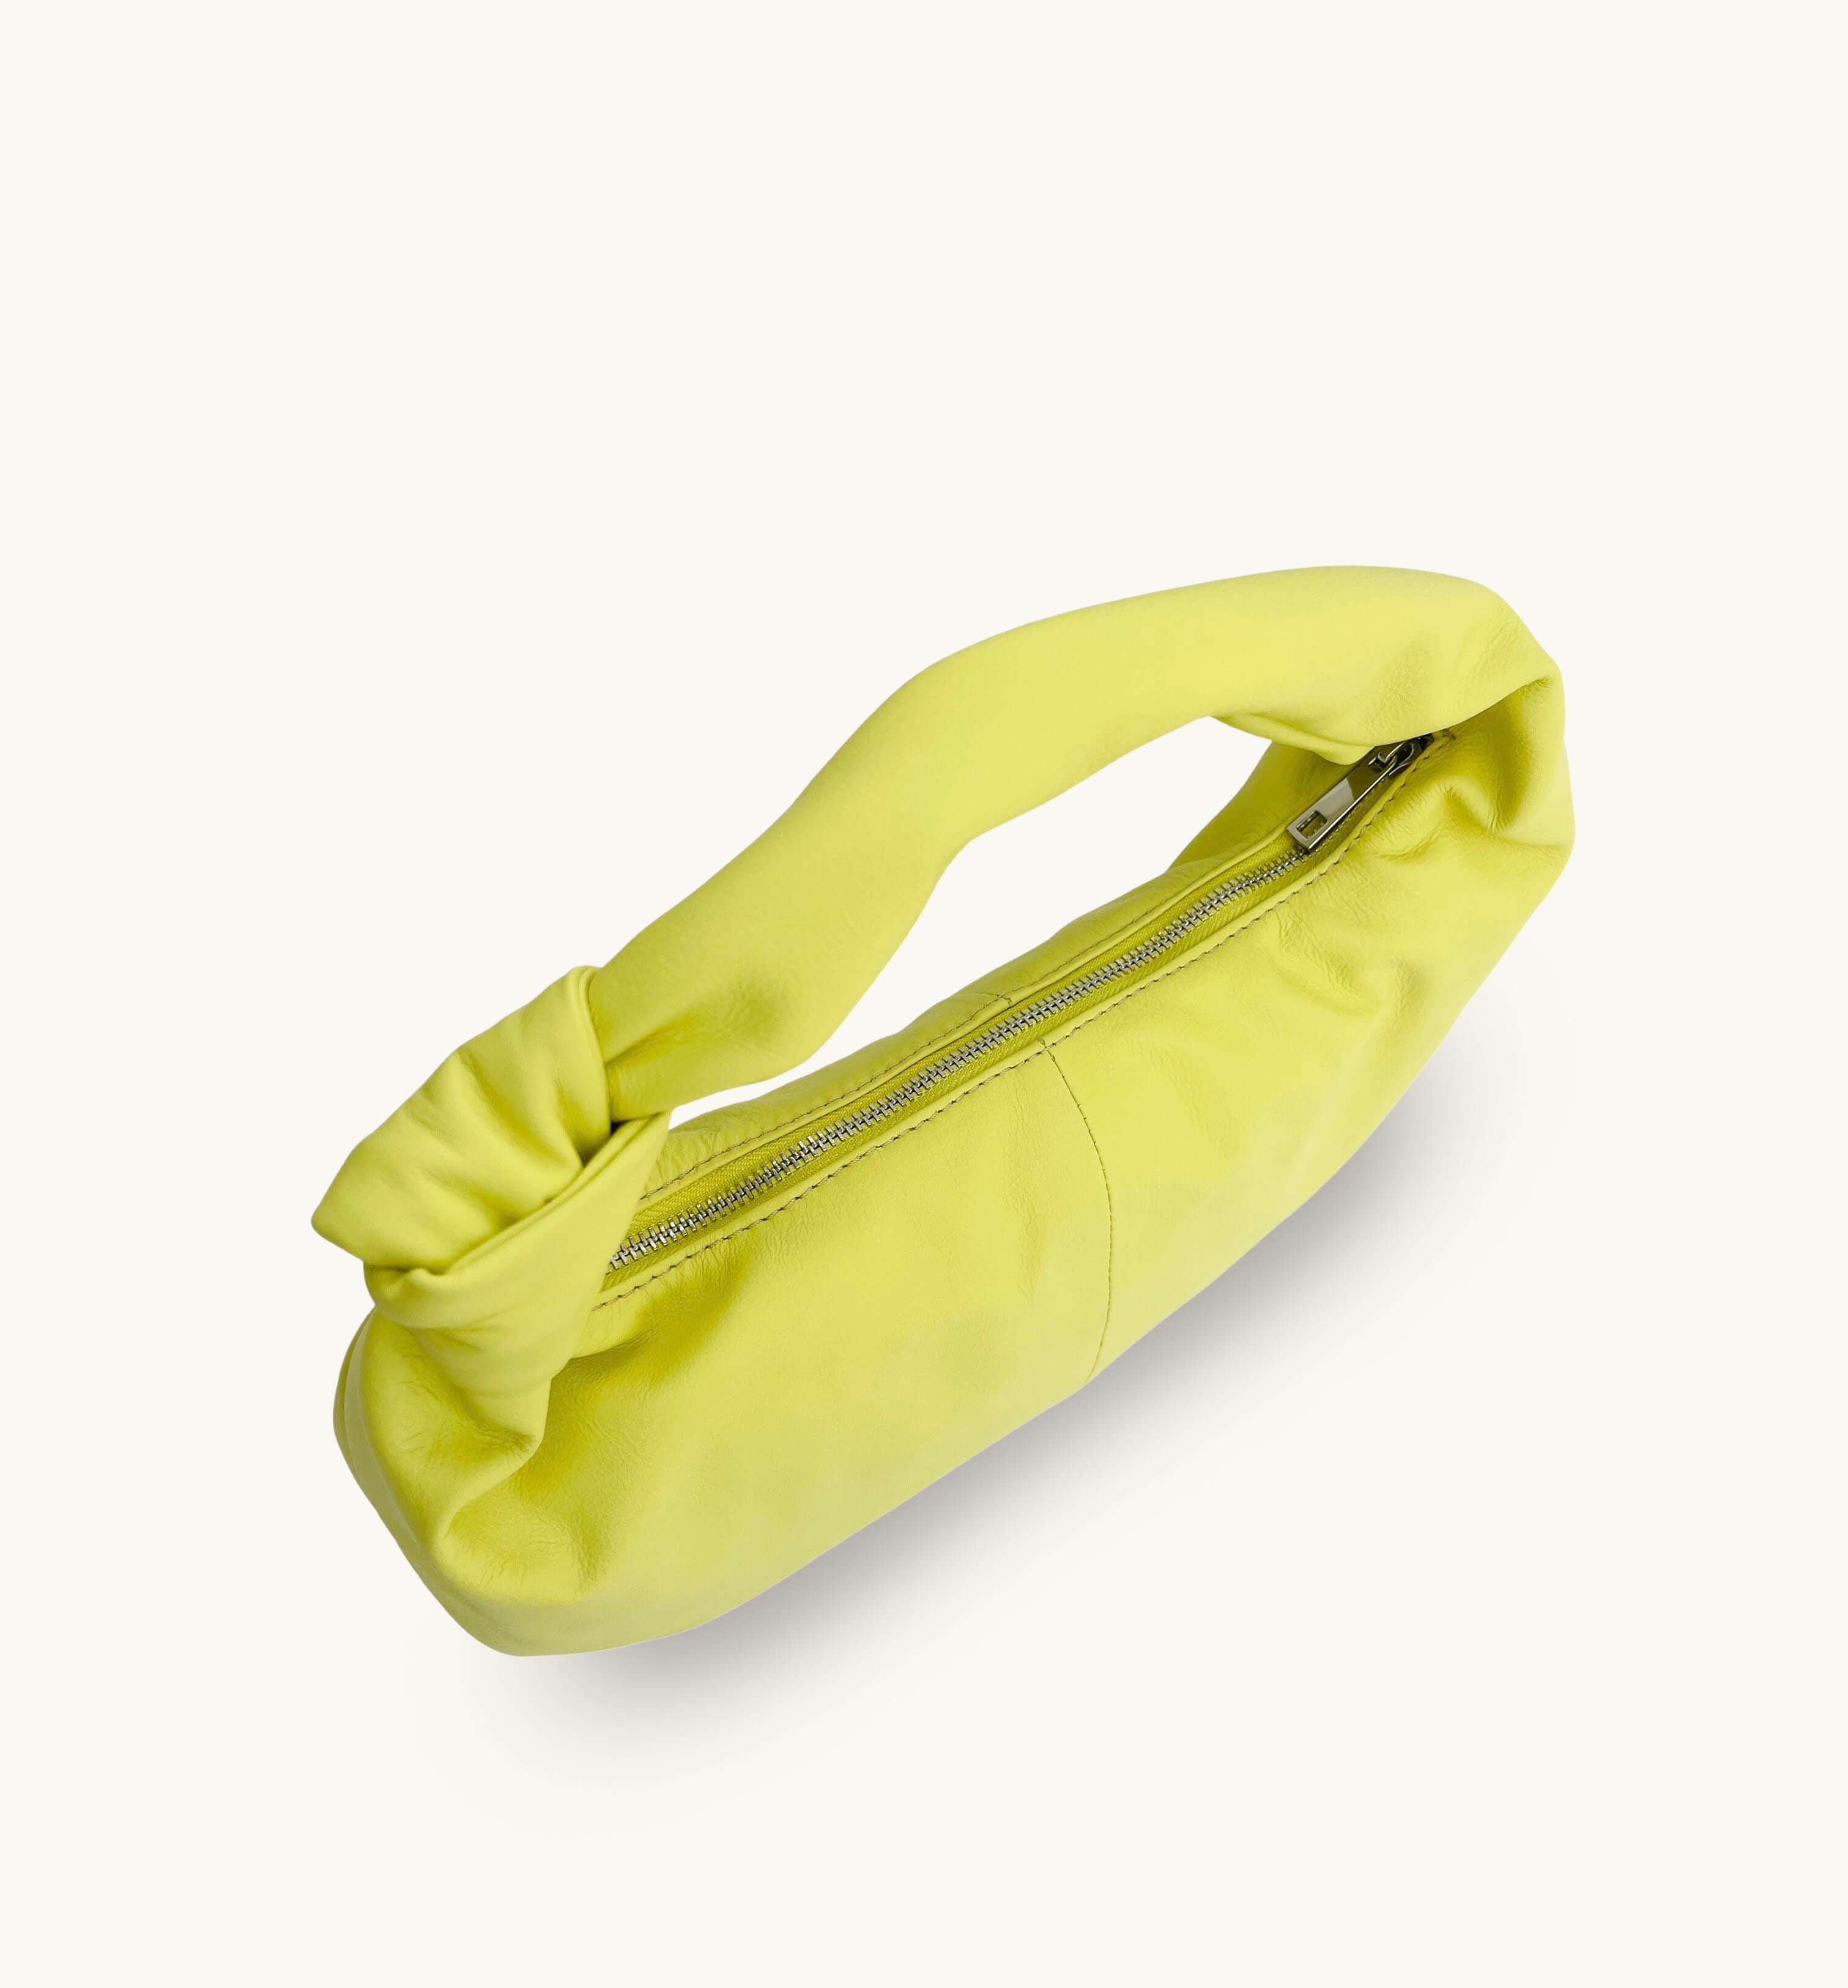 The Margot Lemon Leather Bag